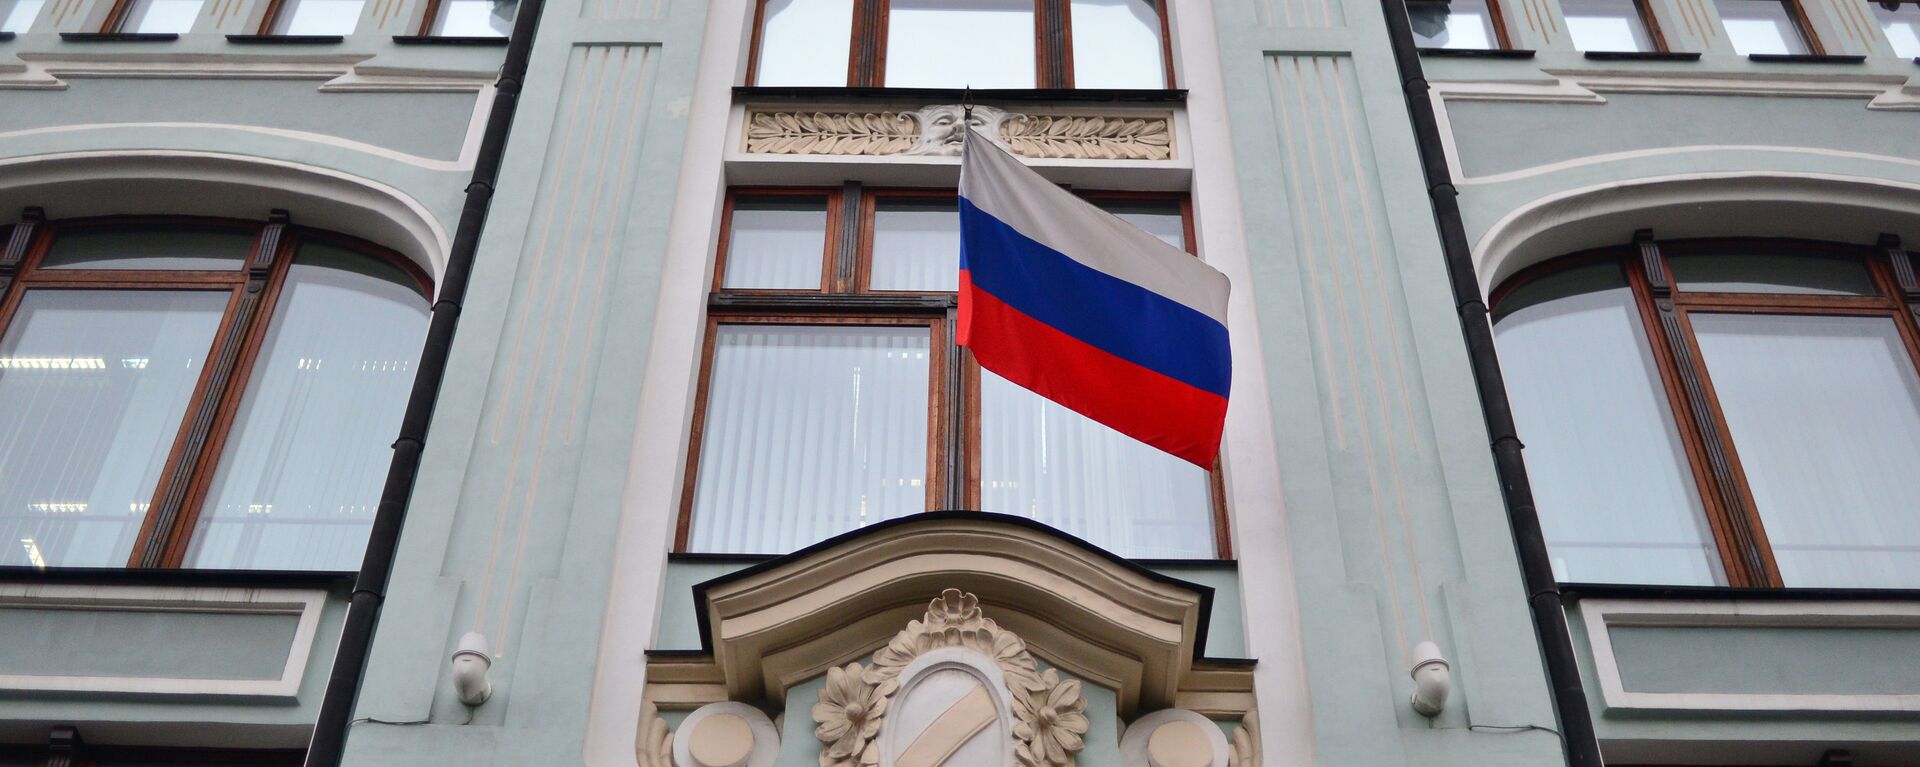 Fasada zdanja Centralne izborne komisije (CIK) Rusije - Sputnik Srbija, 1920, 09.08.2021